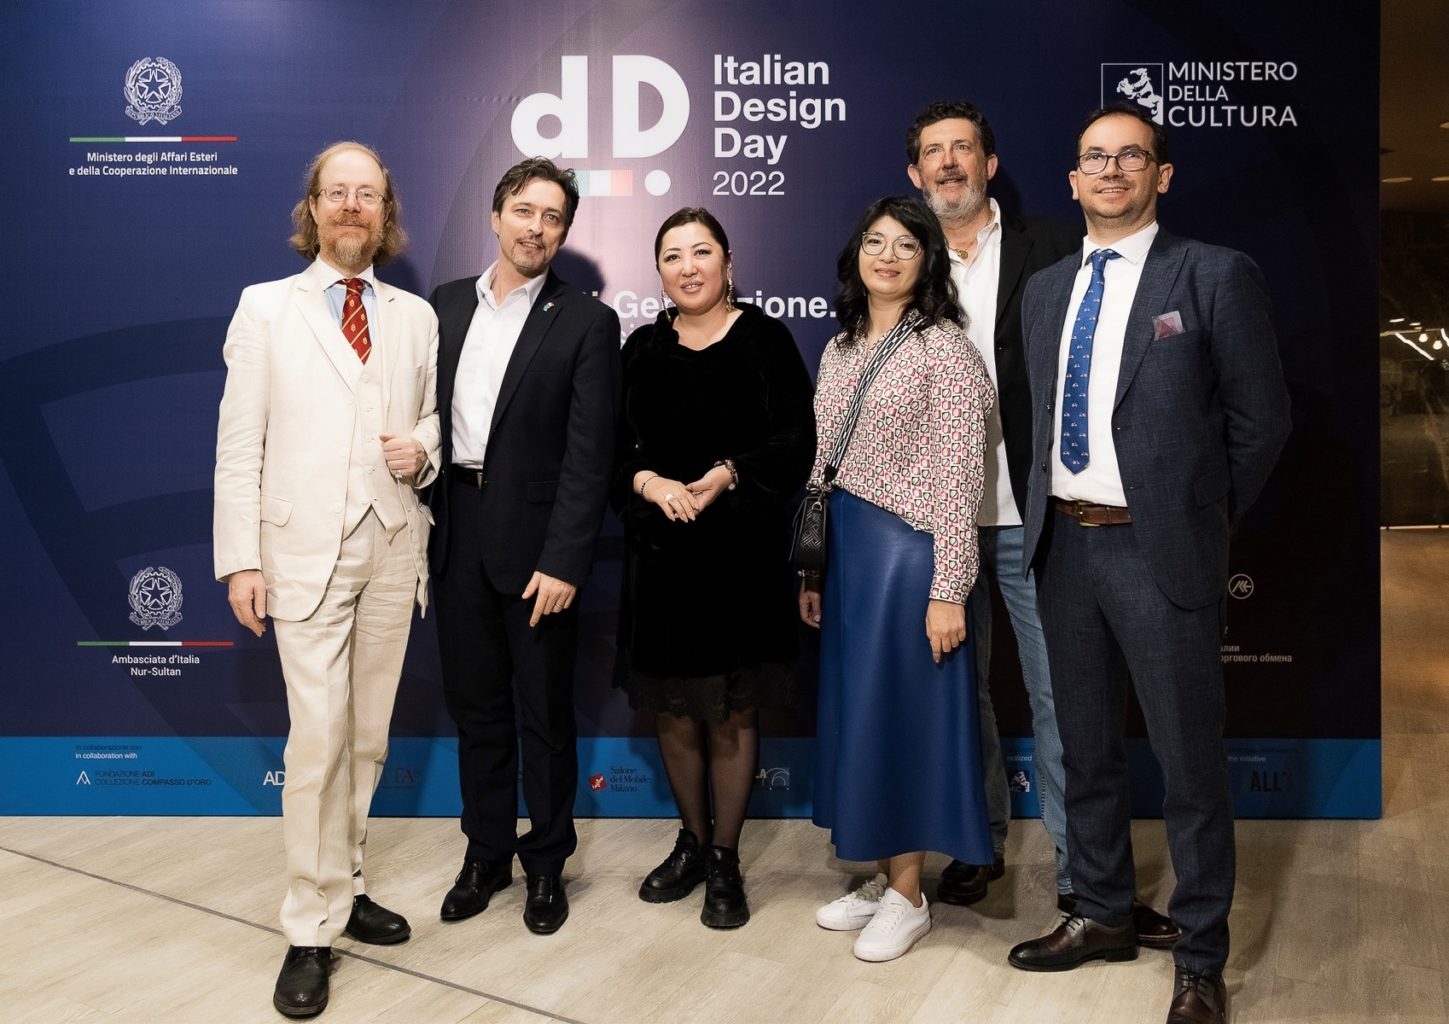 Re-Generation, дизайн и новые технологии: как прошел VI День итальянского дизайна